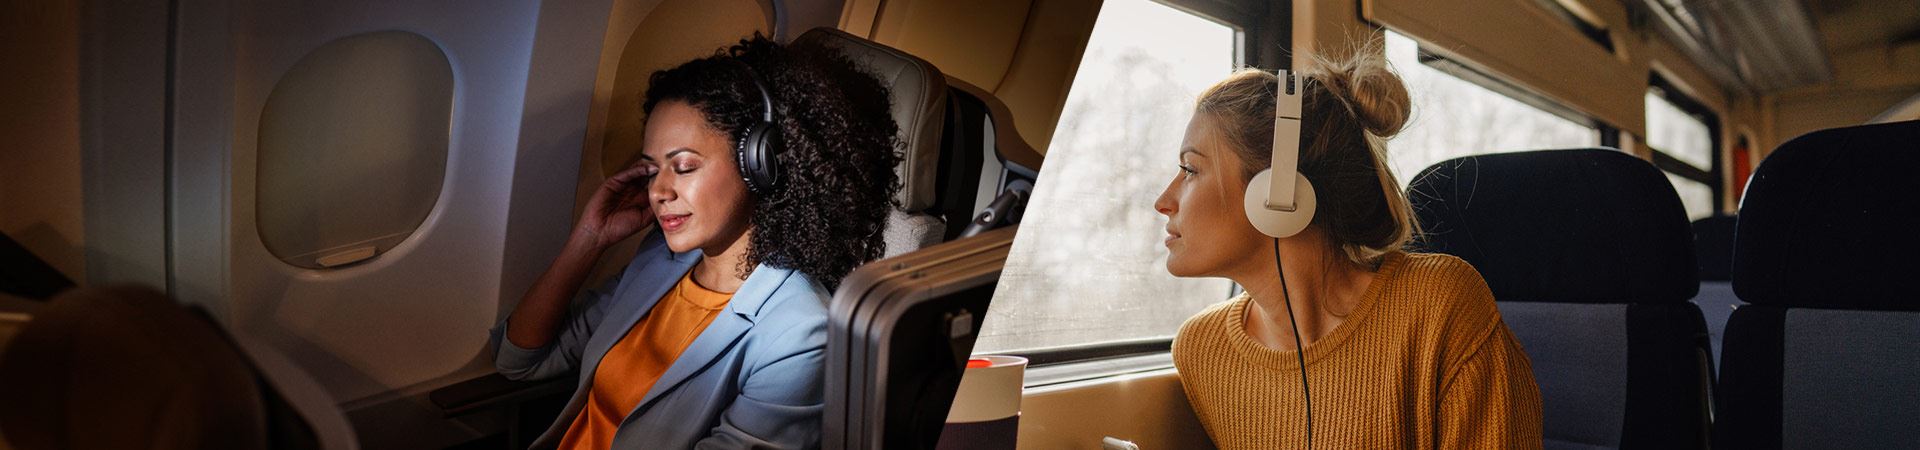 À esquerda, uma fotografia de uma mulher sentada confortavelmente em um avião. À direita, uma fotografia de outra mulher sentada dentro de um trem, olhando pela janela. Ambas estão usando fones de ouvido. O ambiente no avião e no trem é calmo, sem outras pessoas visíveis. 